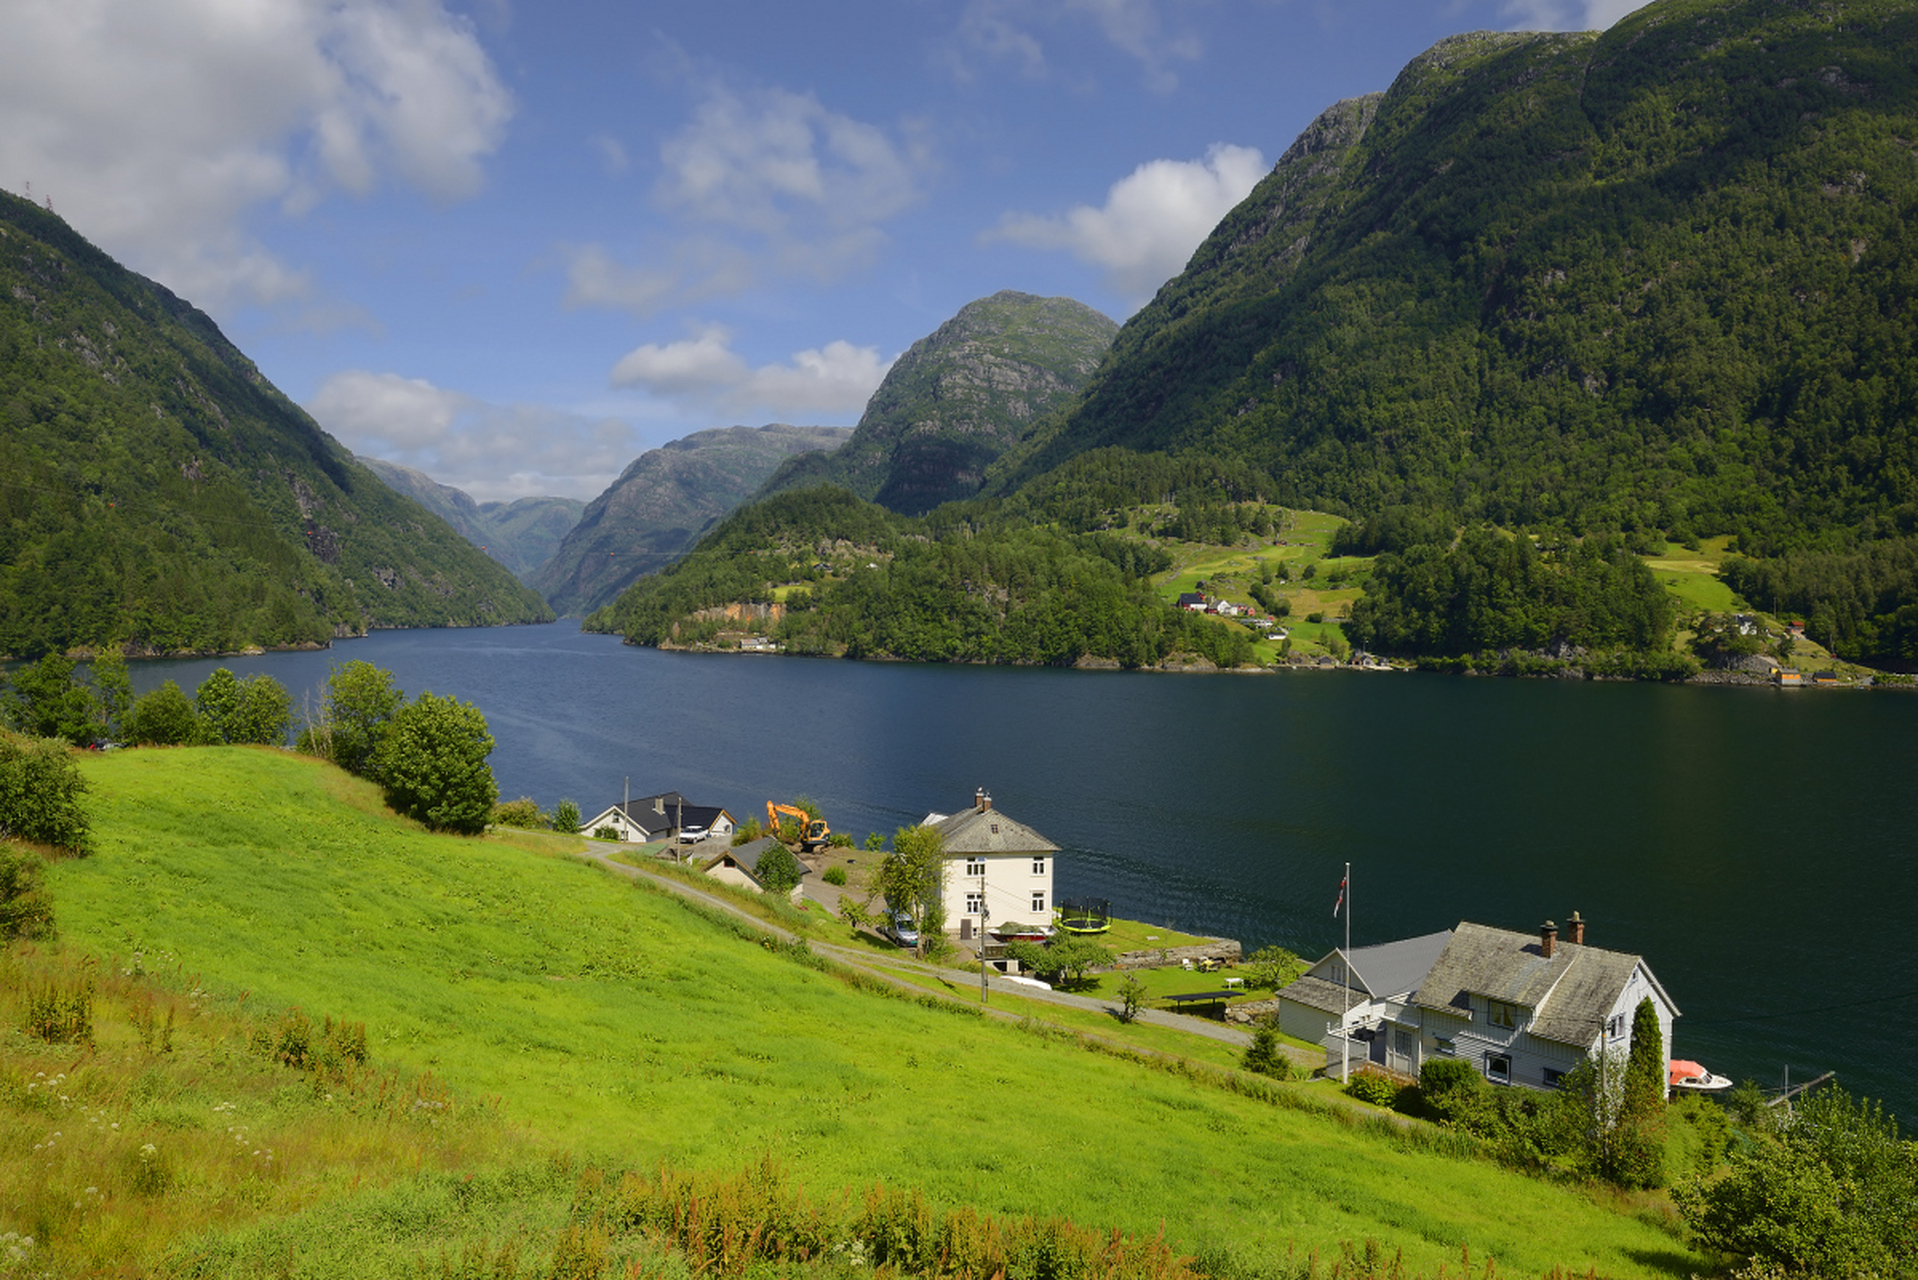 挪威的峡湾是著名的自然景观,以壮丽风光,清澈水域和宁静山谷闻名